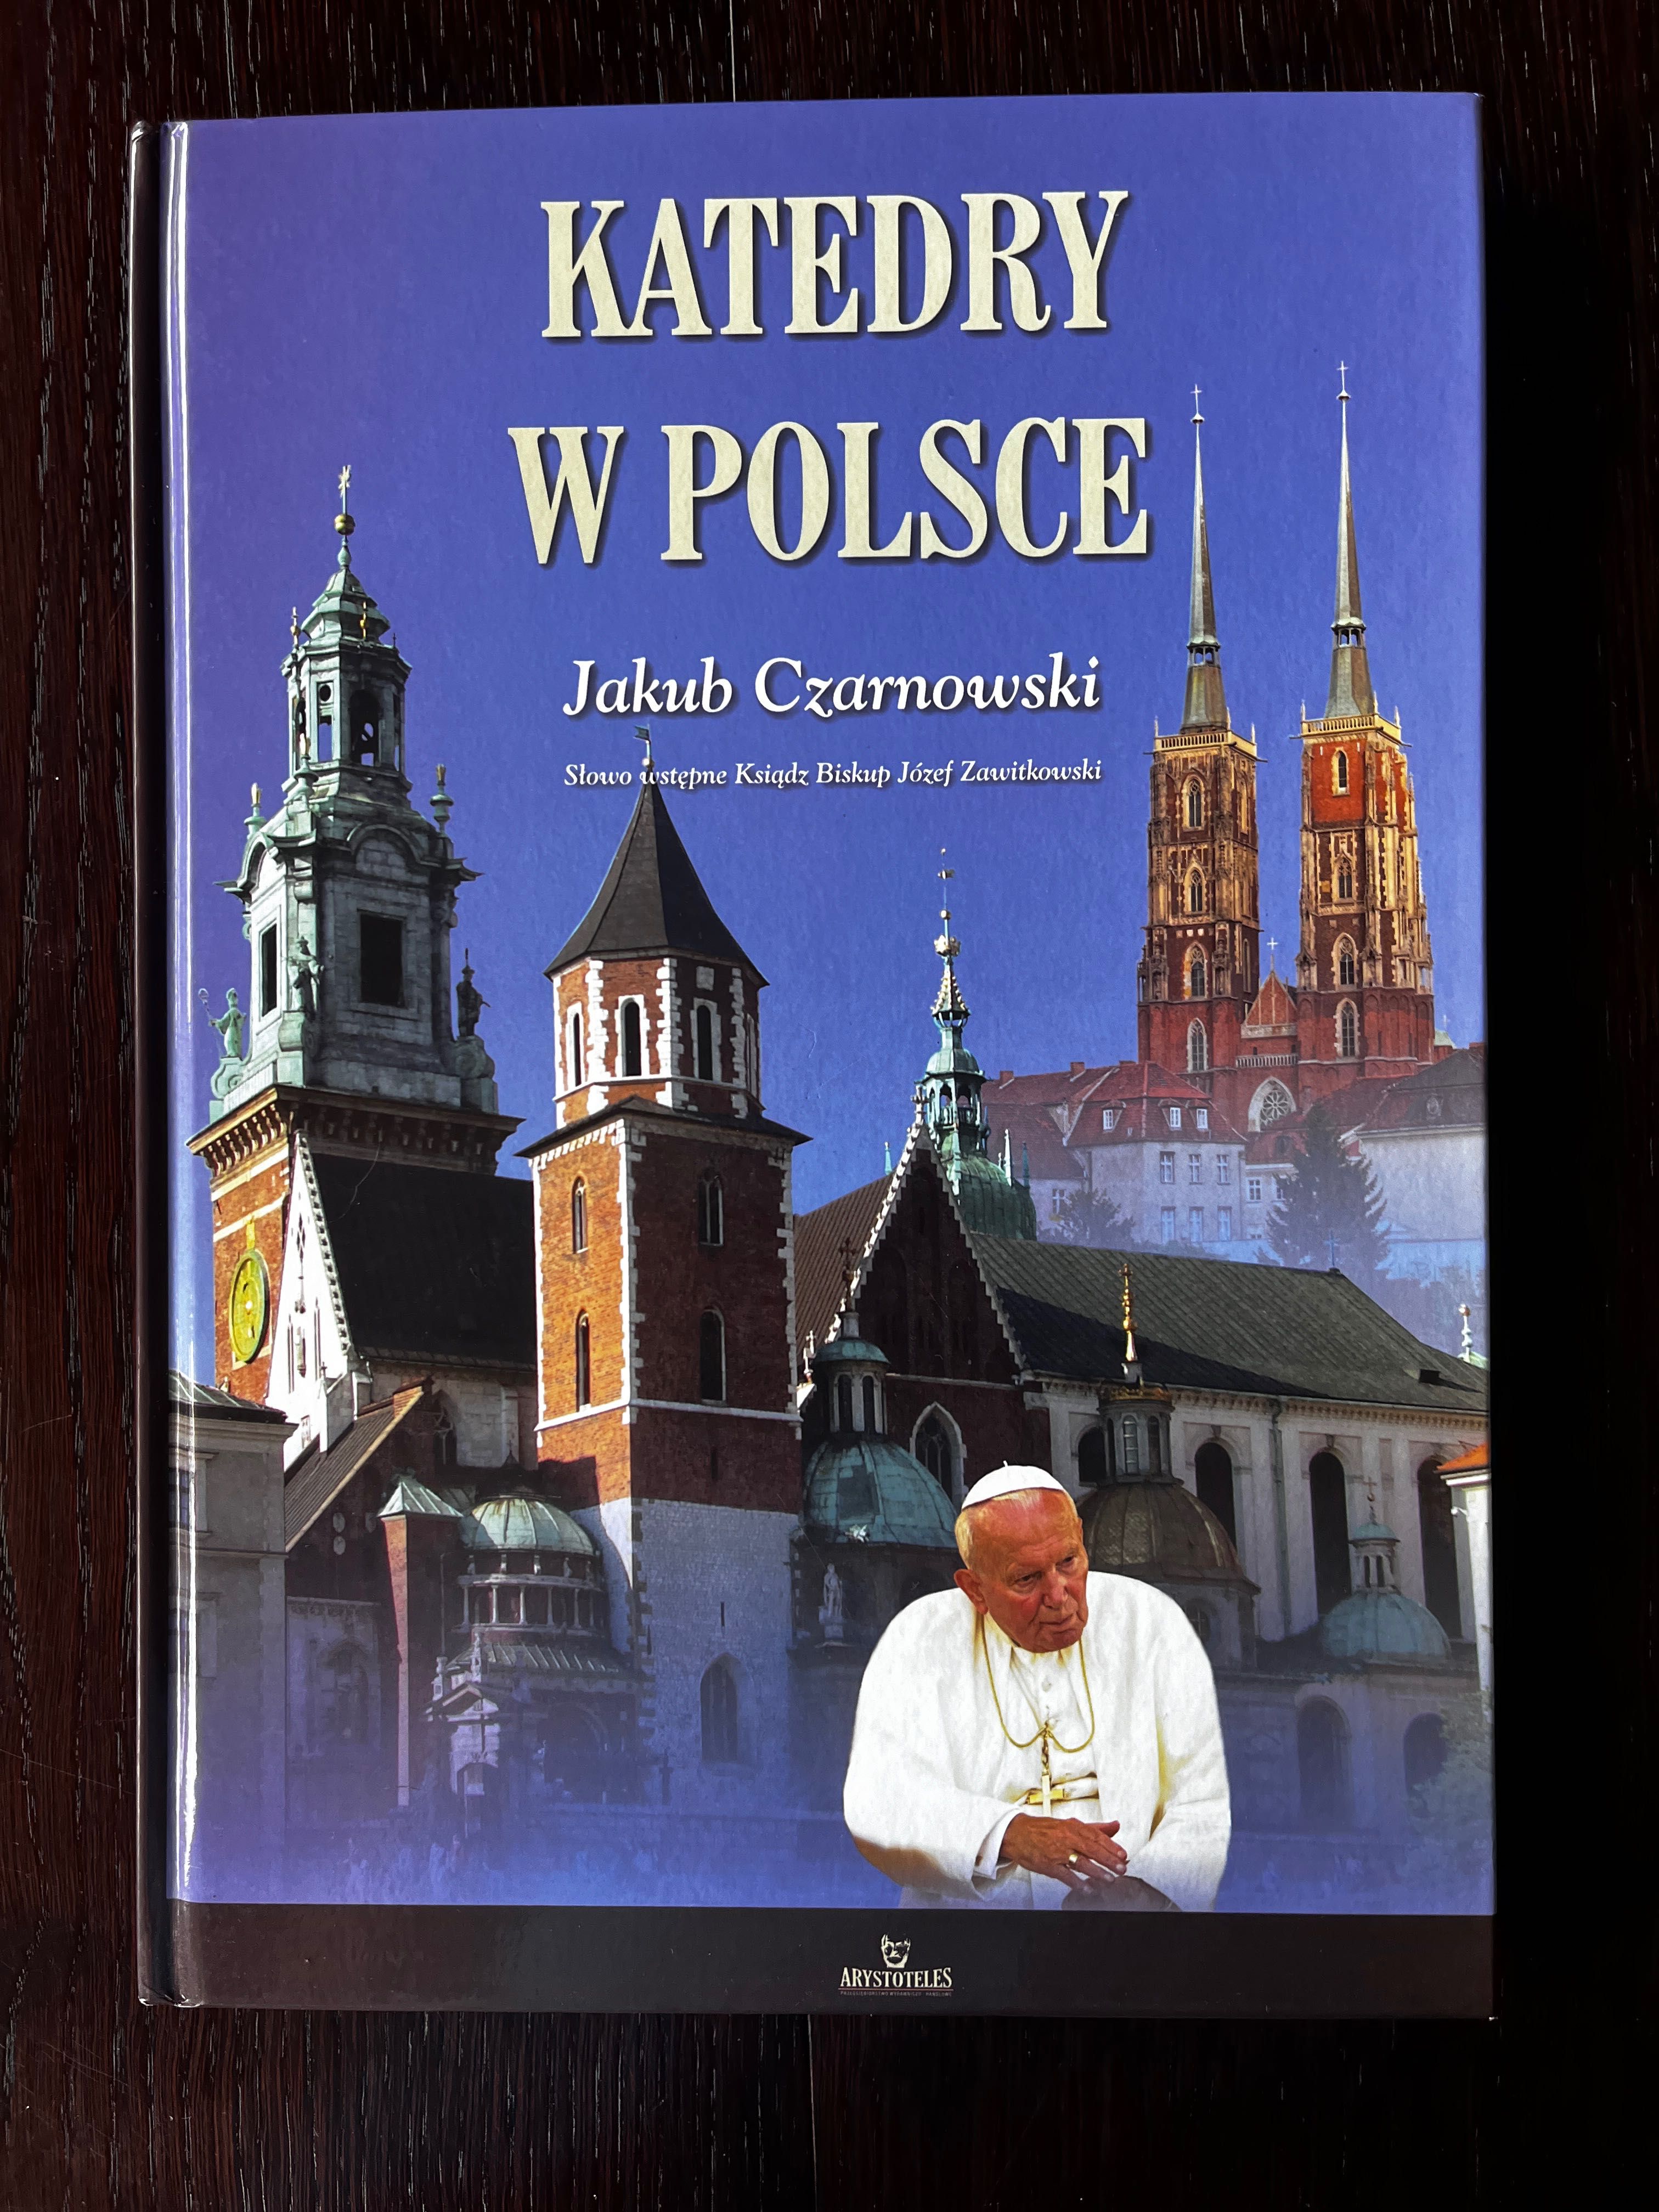 Katedry w Polsce - Jakub Czarnowski